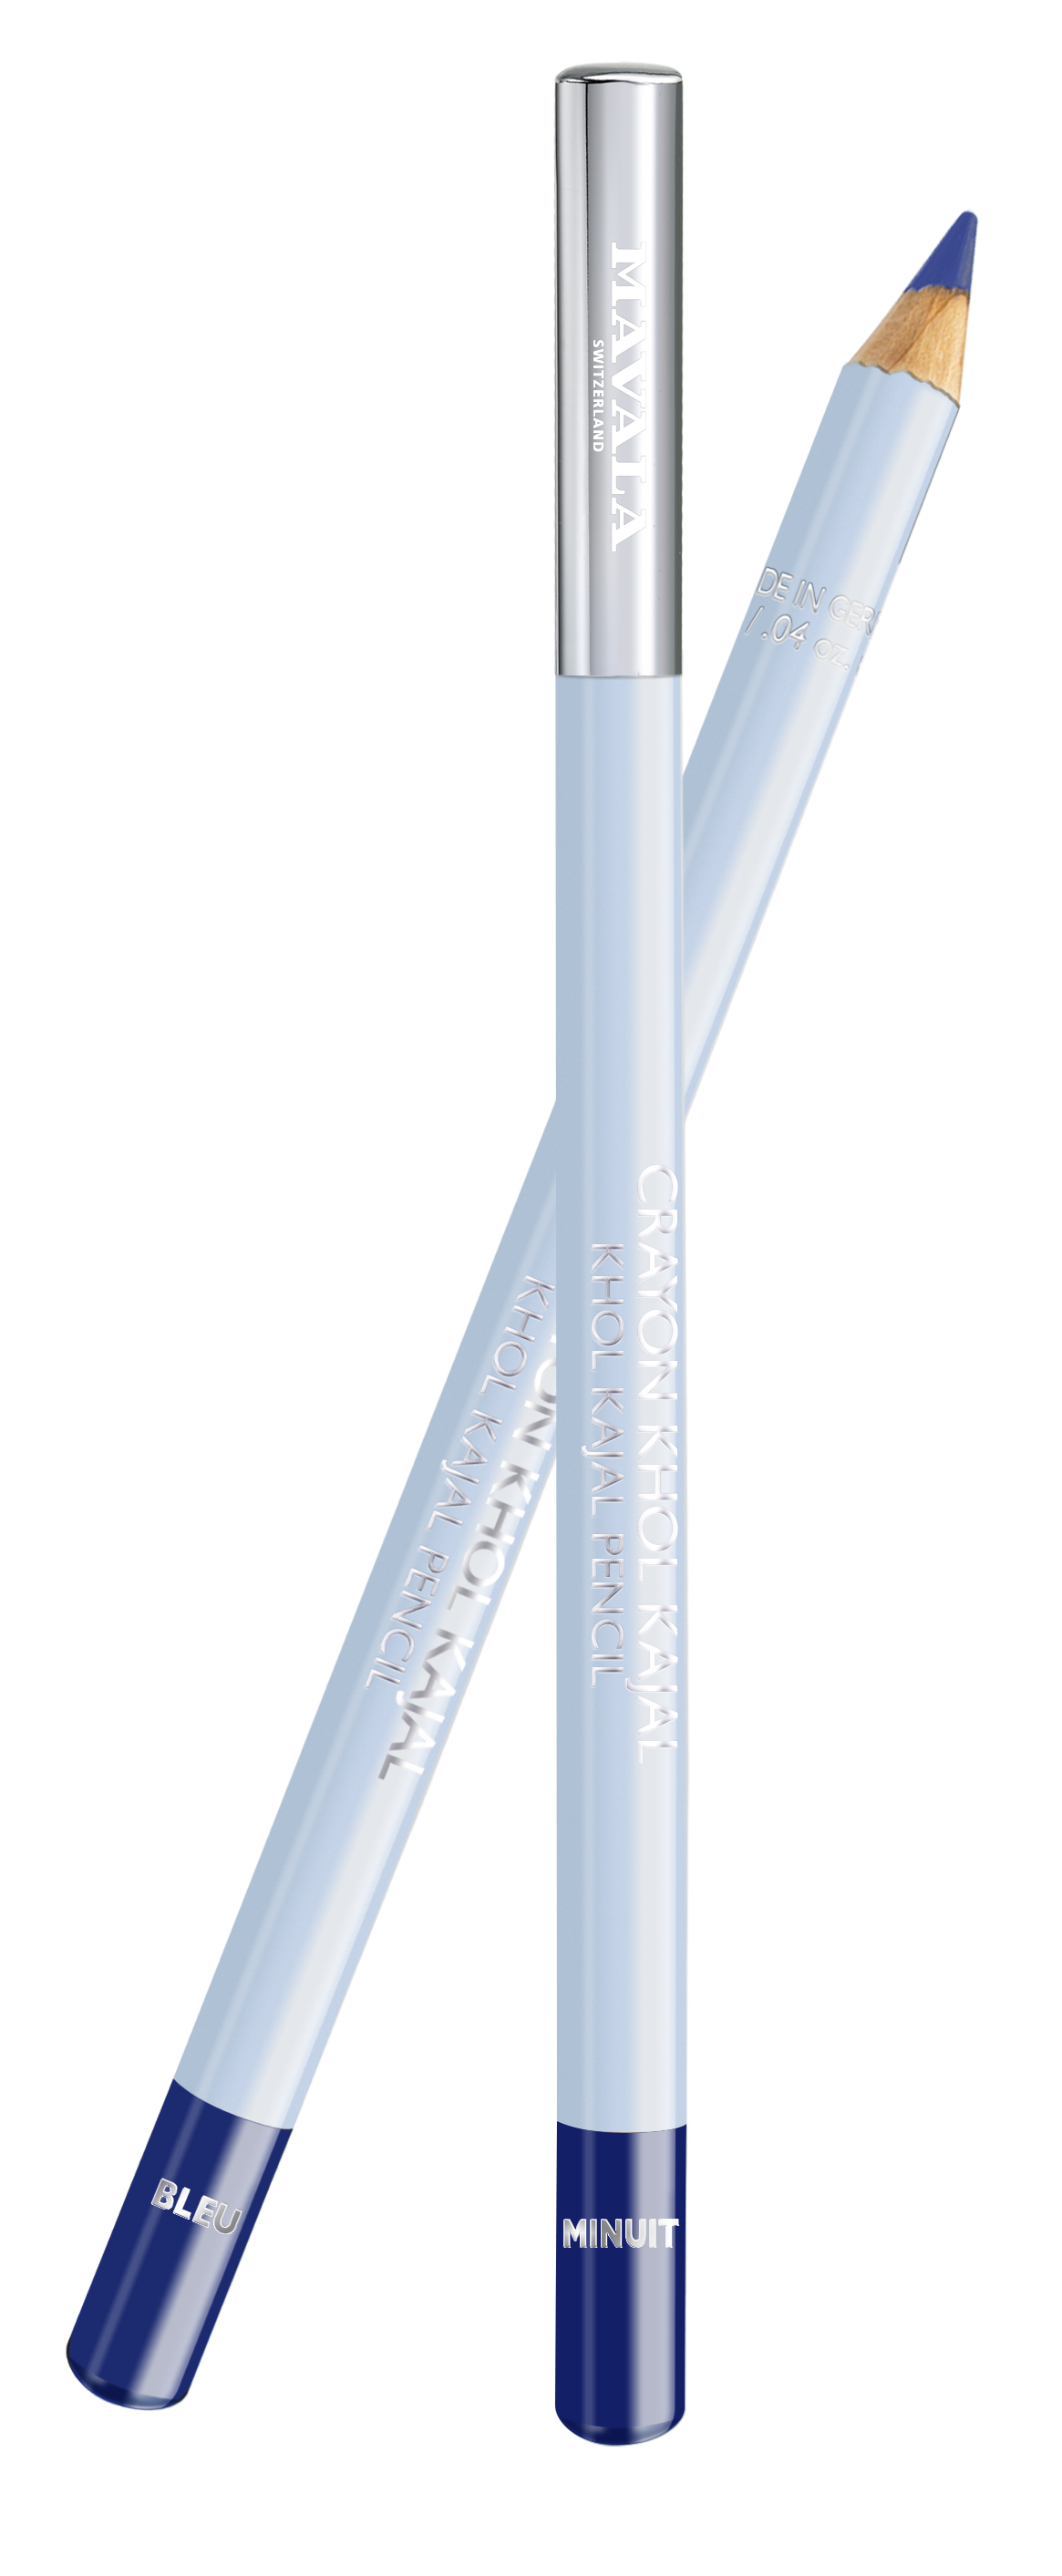 935.03 KHÔL KAJAL - Stift - Bleu Minuit (marine) - Augenkontur-Stift für einen strahlend schönen Blick - Vegan